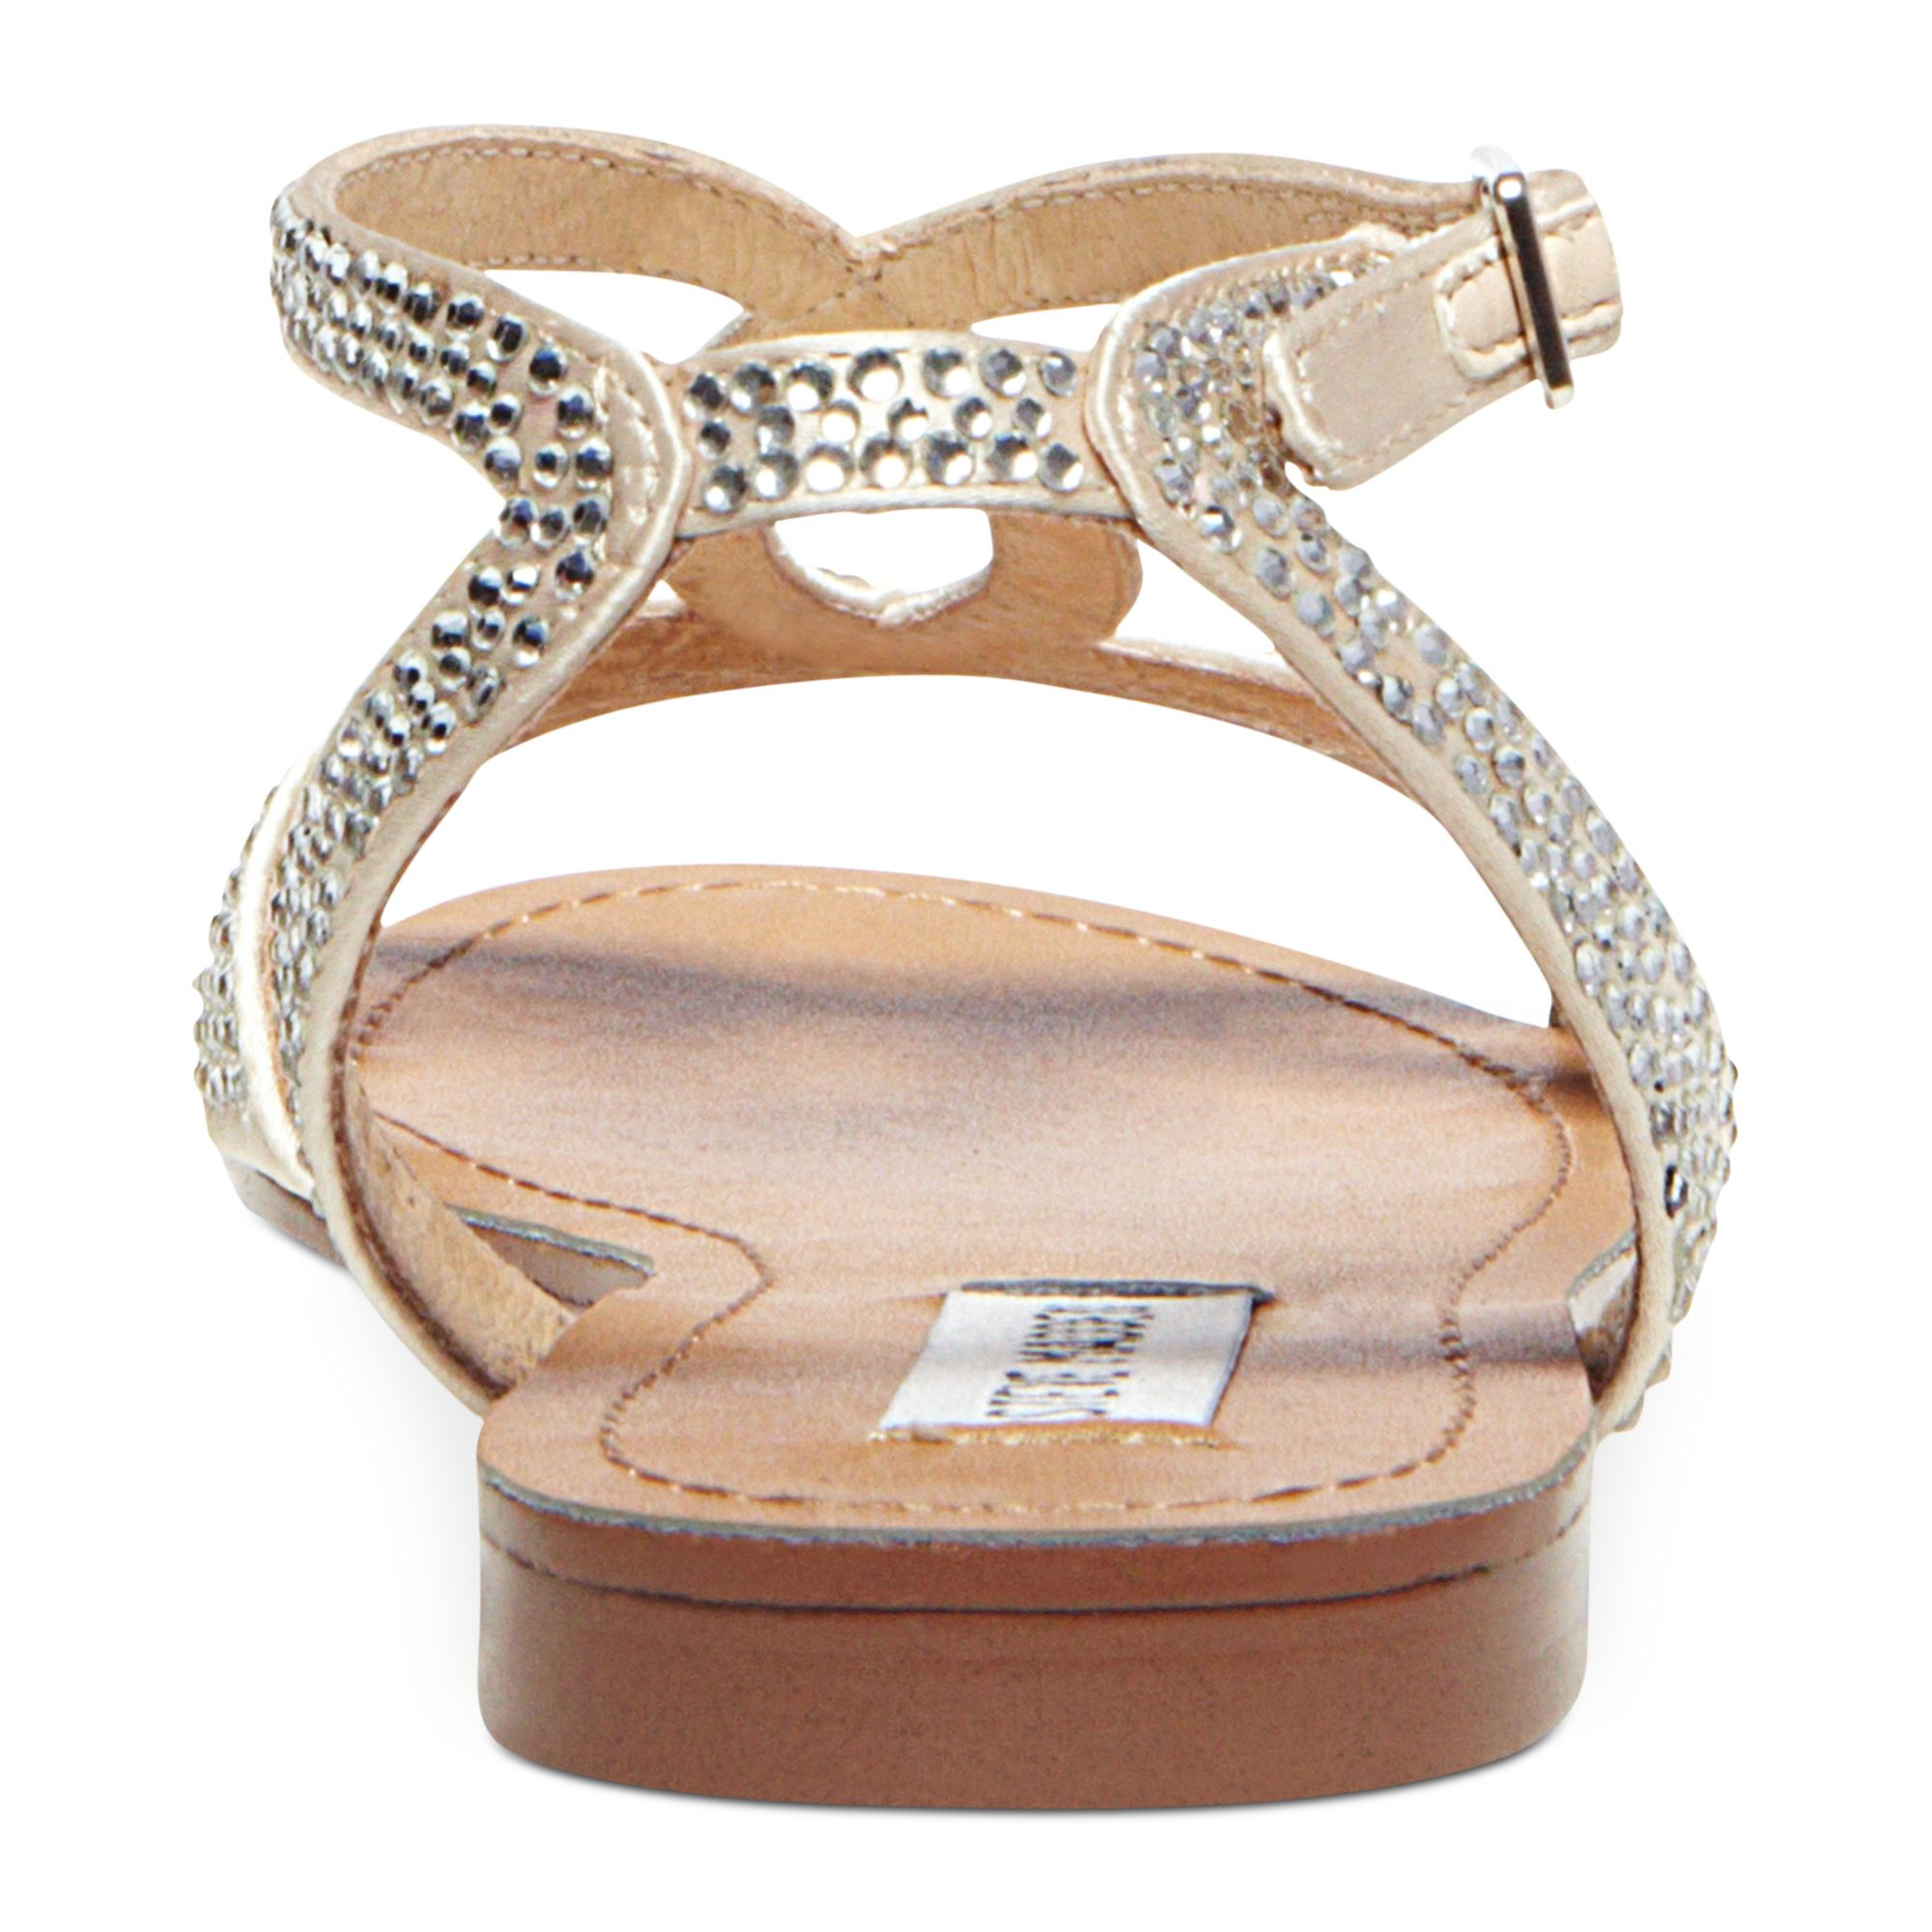 Steve madden Women'S Starrz Flat Sandals in Silver (Silver Multi) | Lyst